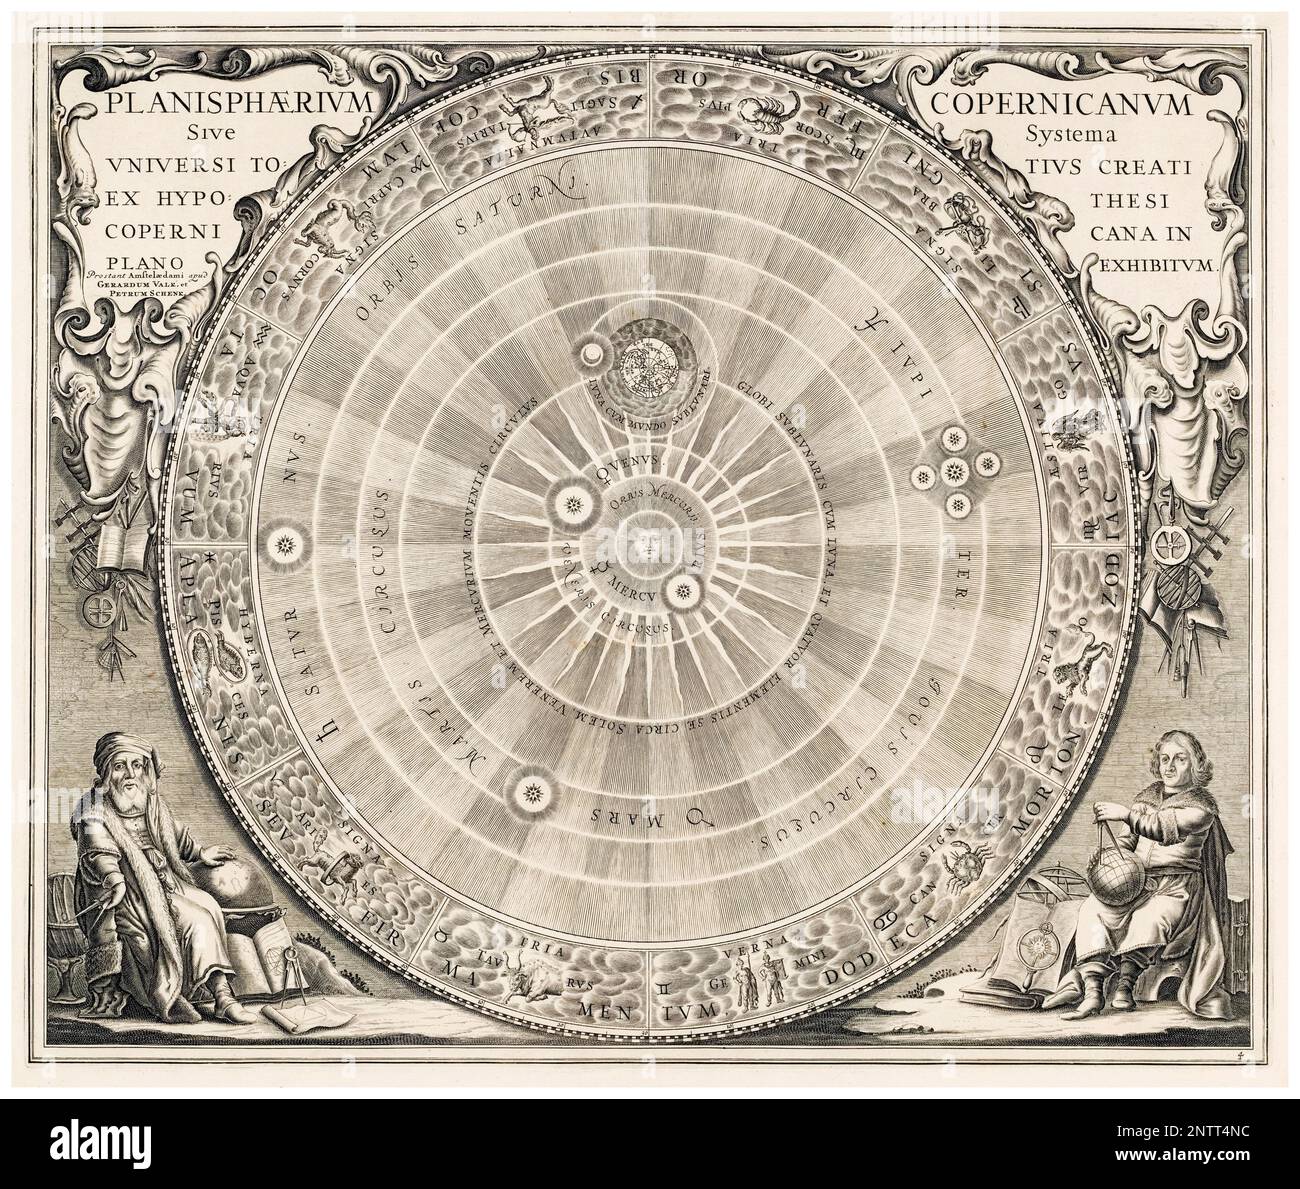 Carte céleste montrant le système héliocentrique de Nicholas Copernicus, gravure, 1660 Banque D'Images